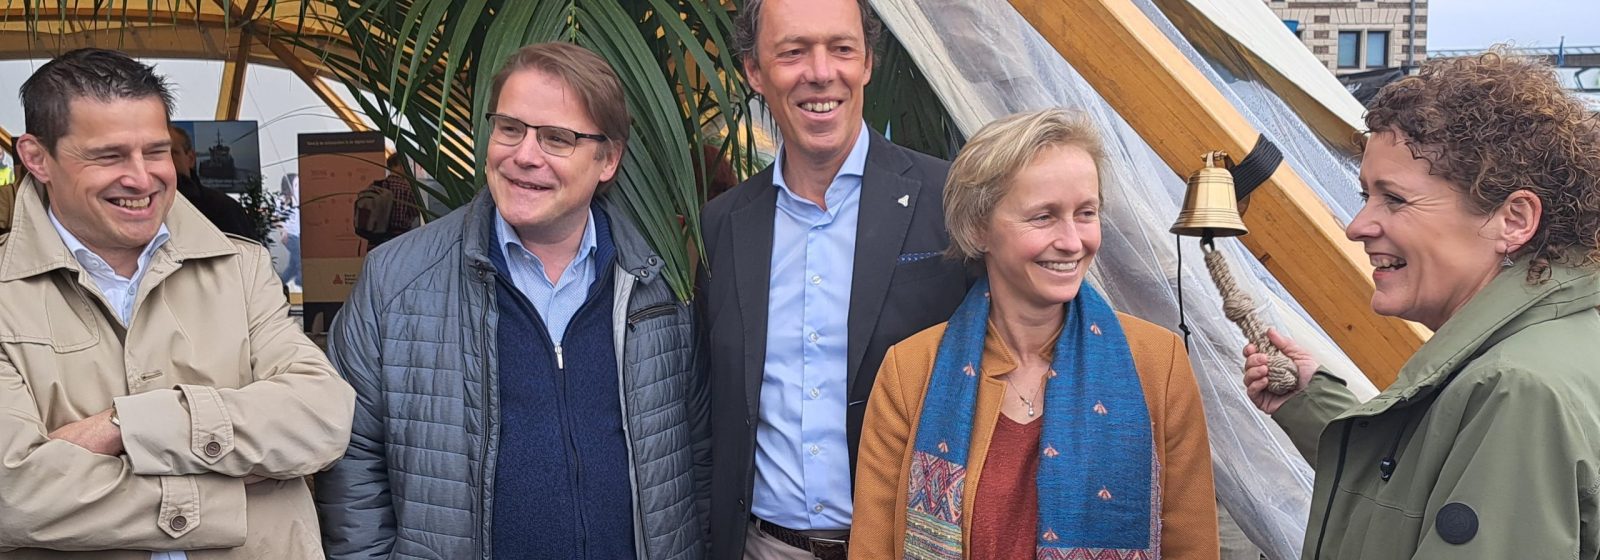 Vlaams minister van Mobiliteit en Openbare Werken Lydia Peeters opent de Vlaamse Havendag met het luiden van de scheepsbel